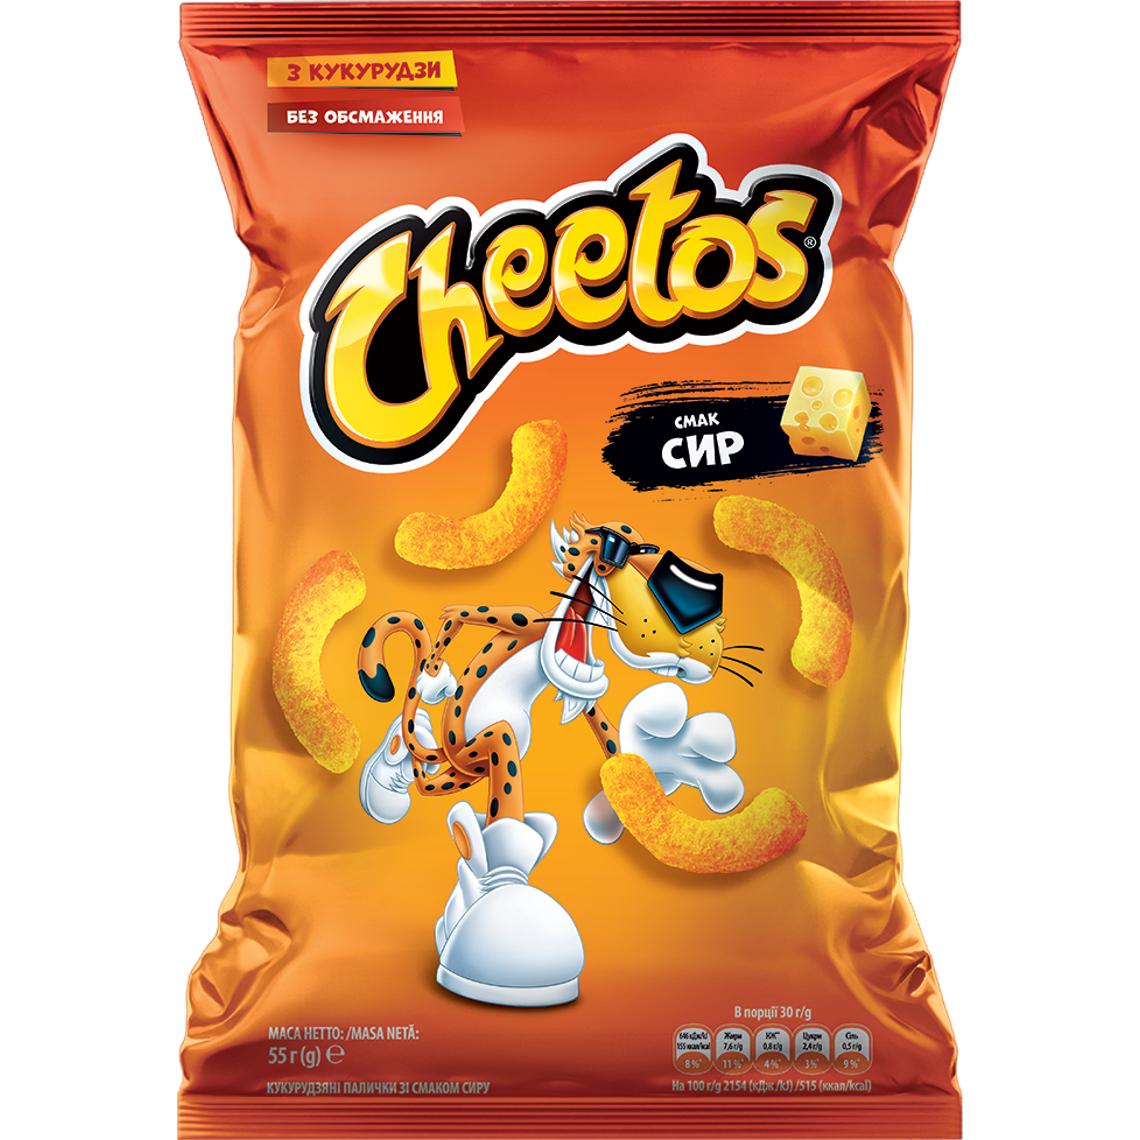 Палички кукурудзяні Cheetos зі смаком сиру, 55 г (857713) - фото 1